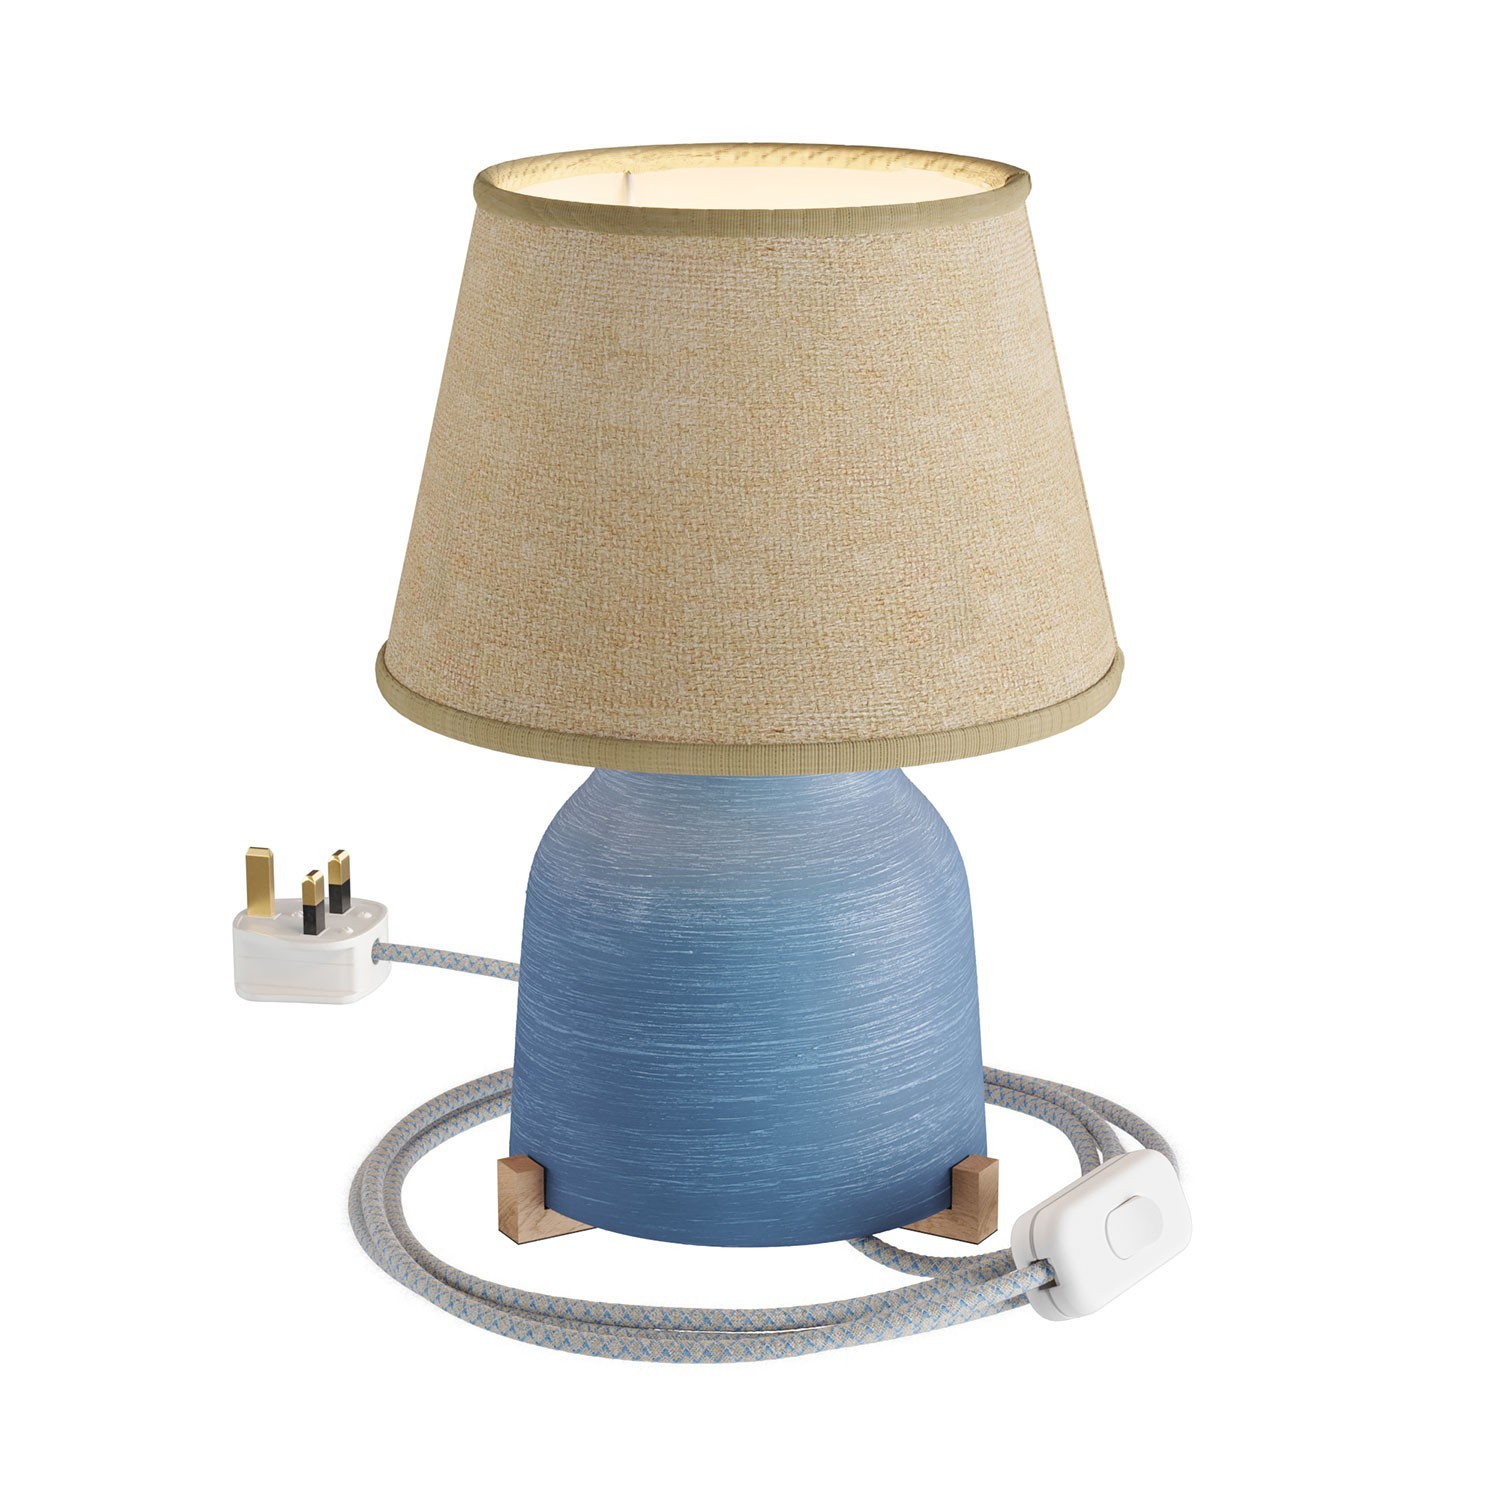 Lámpara de sobremesa de cerámica con pantalla Imperio, completa con cable textil, interruptor y clavija inglesa